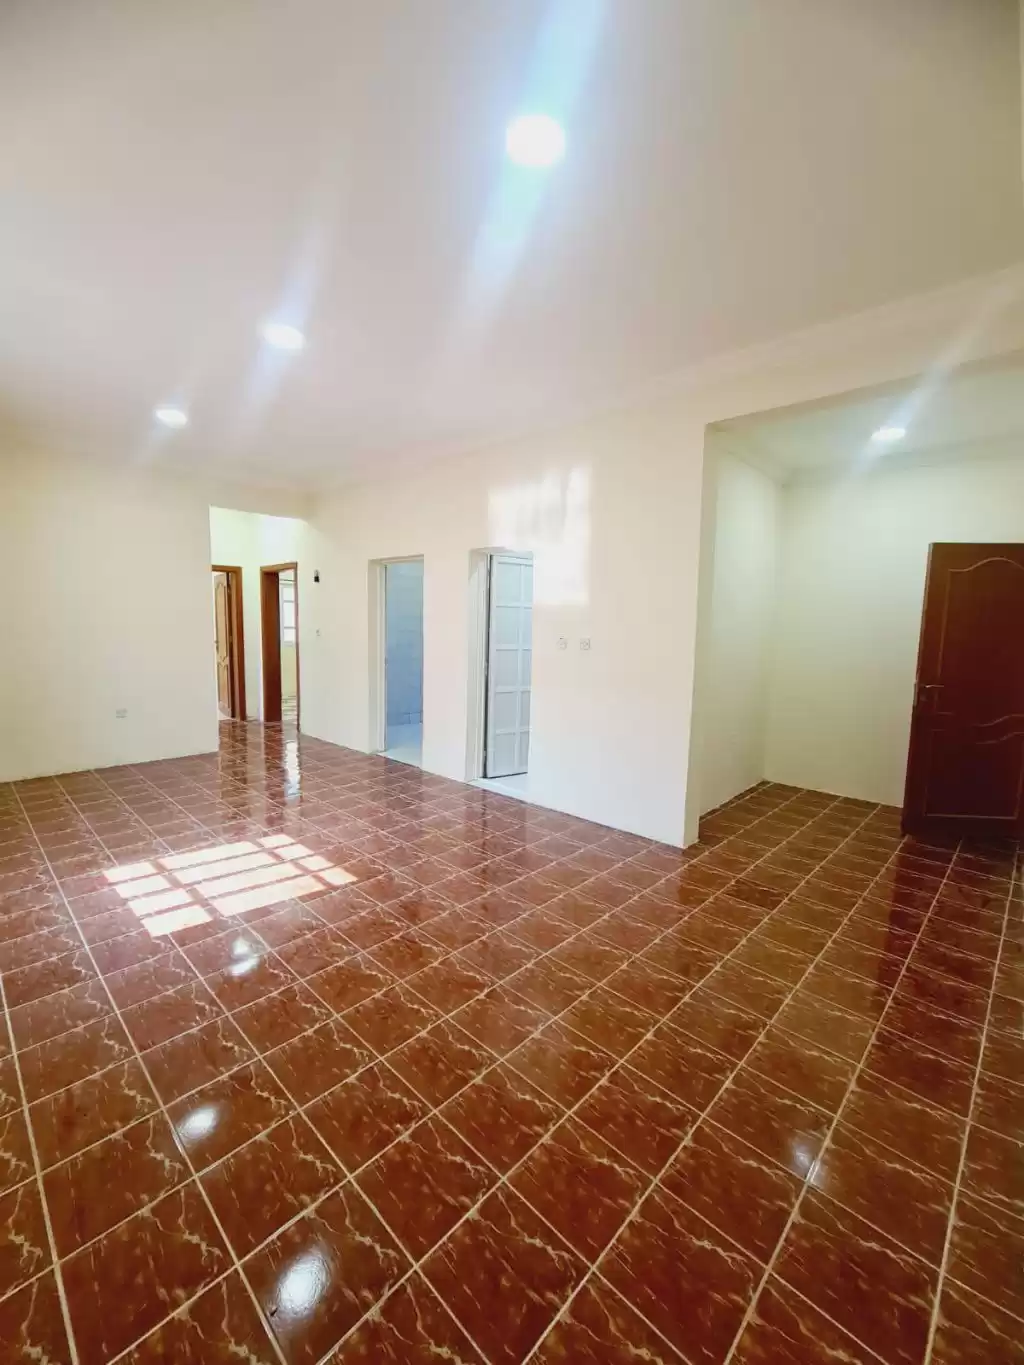 Résidentiel Propriété prête 2 chambres U / f Appartement  a louer au Al-Sadd , Doha #10828 - 1  image 